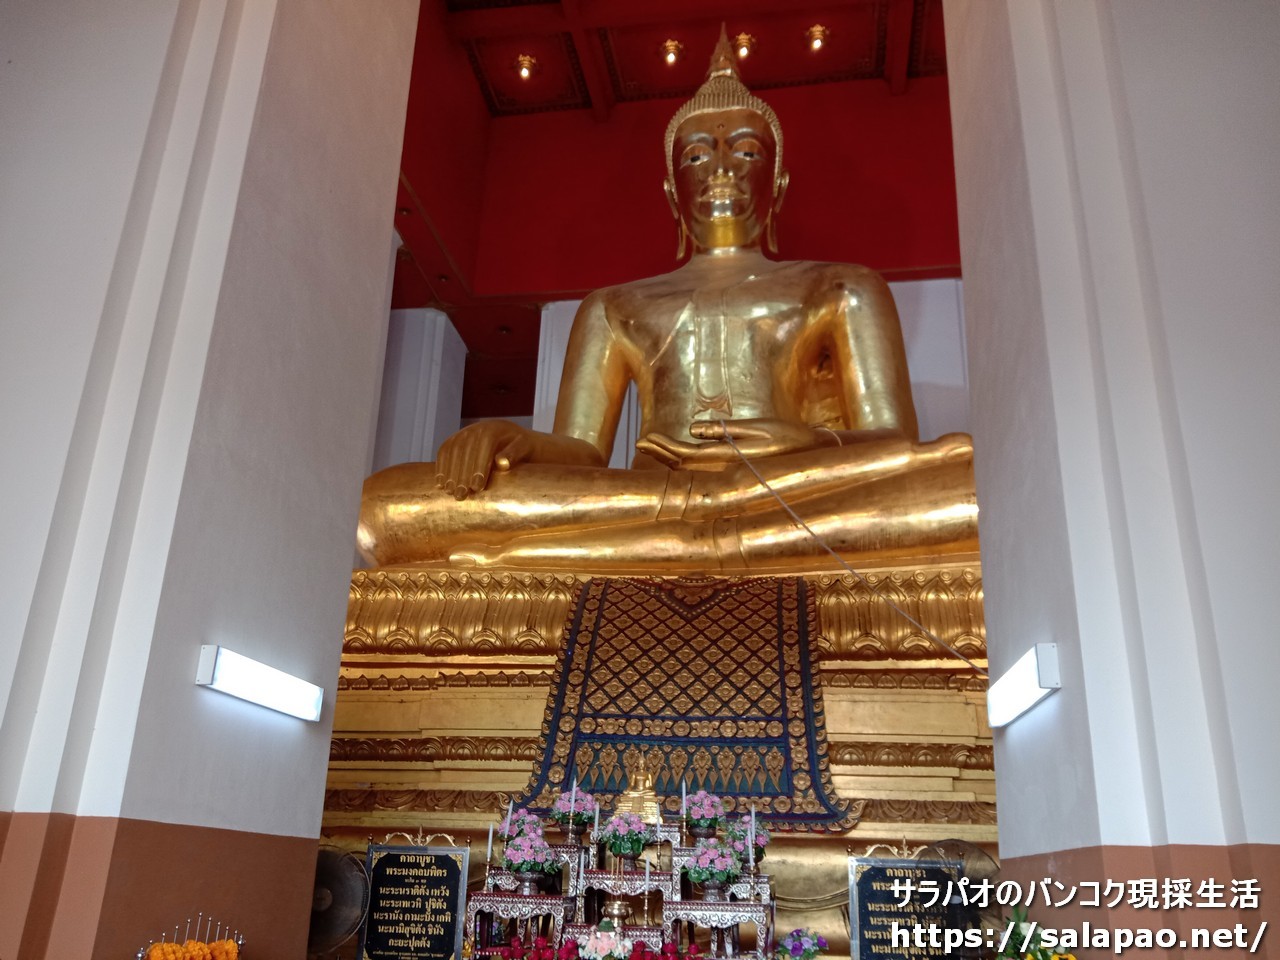 ヴィハーン・プラ・モンコン・ボピットに納められた黄金の巨大仏像　in　アユタヤ